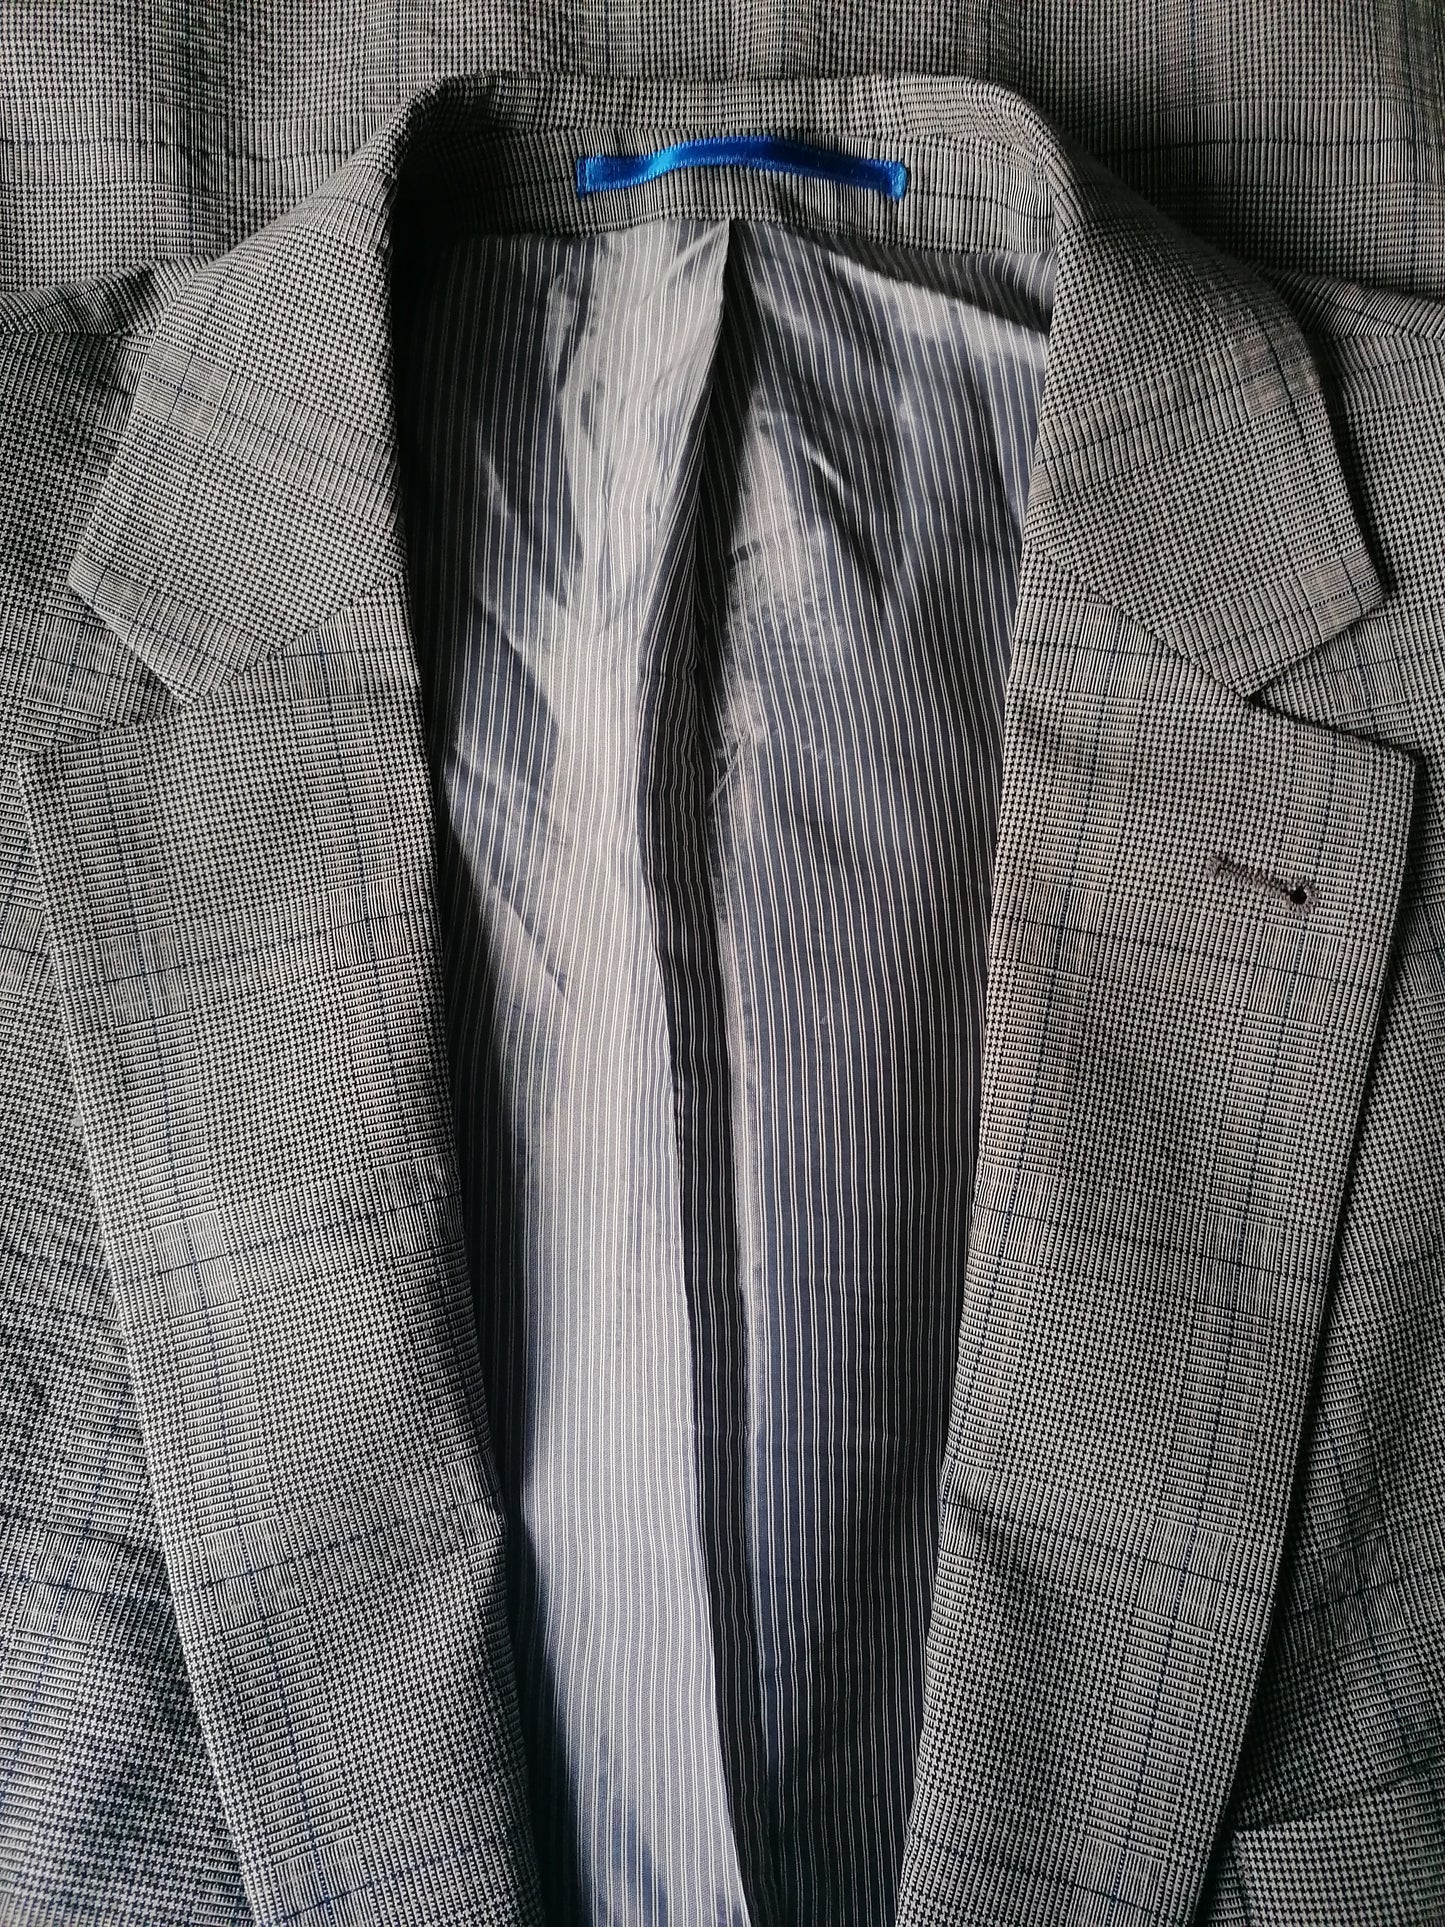 Giacca Bogart Woolen. Blu nero grigio controllato. Dimensione 27 (54 / L) 57% lana.